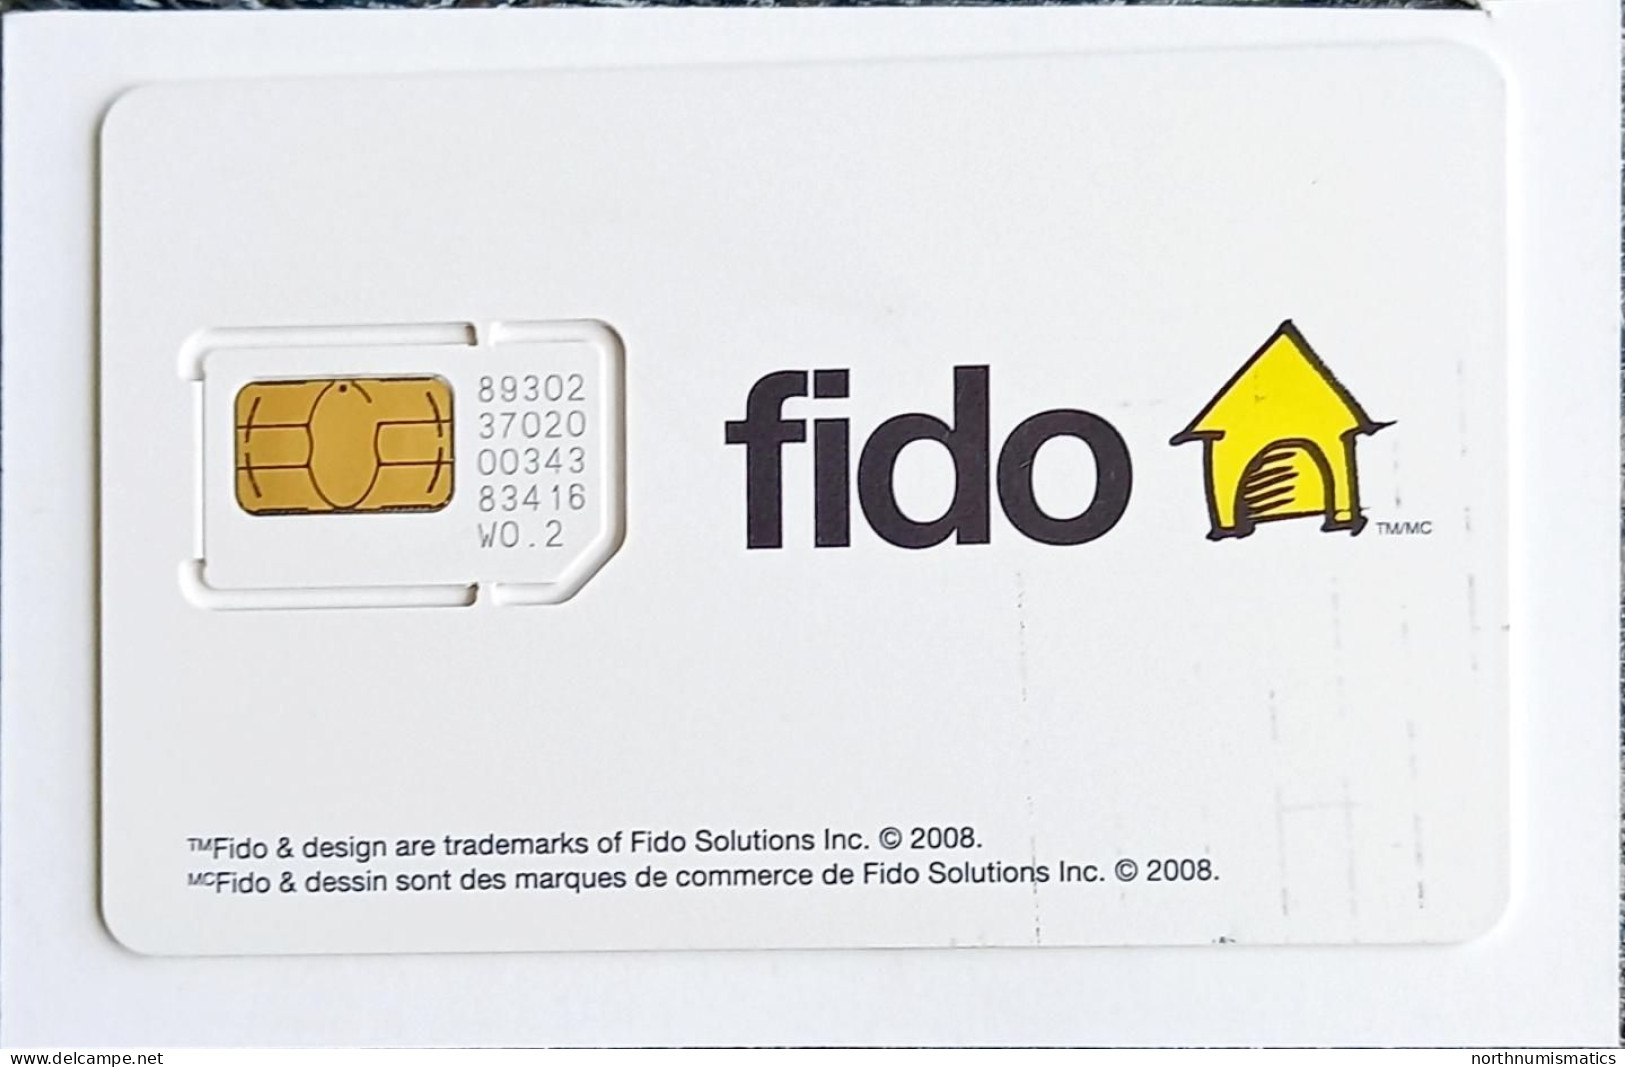 Canada Fido Gsm Original Chip Sim Card - Verzamelingen